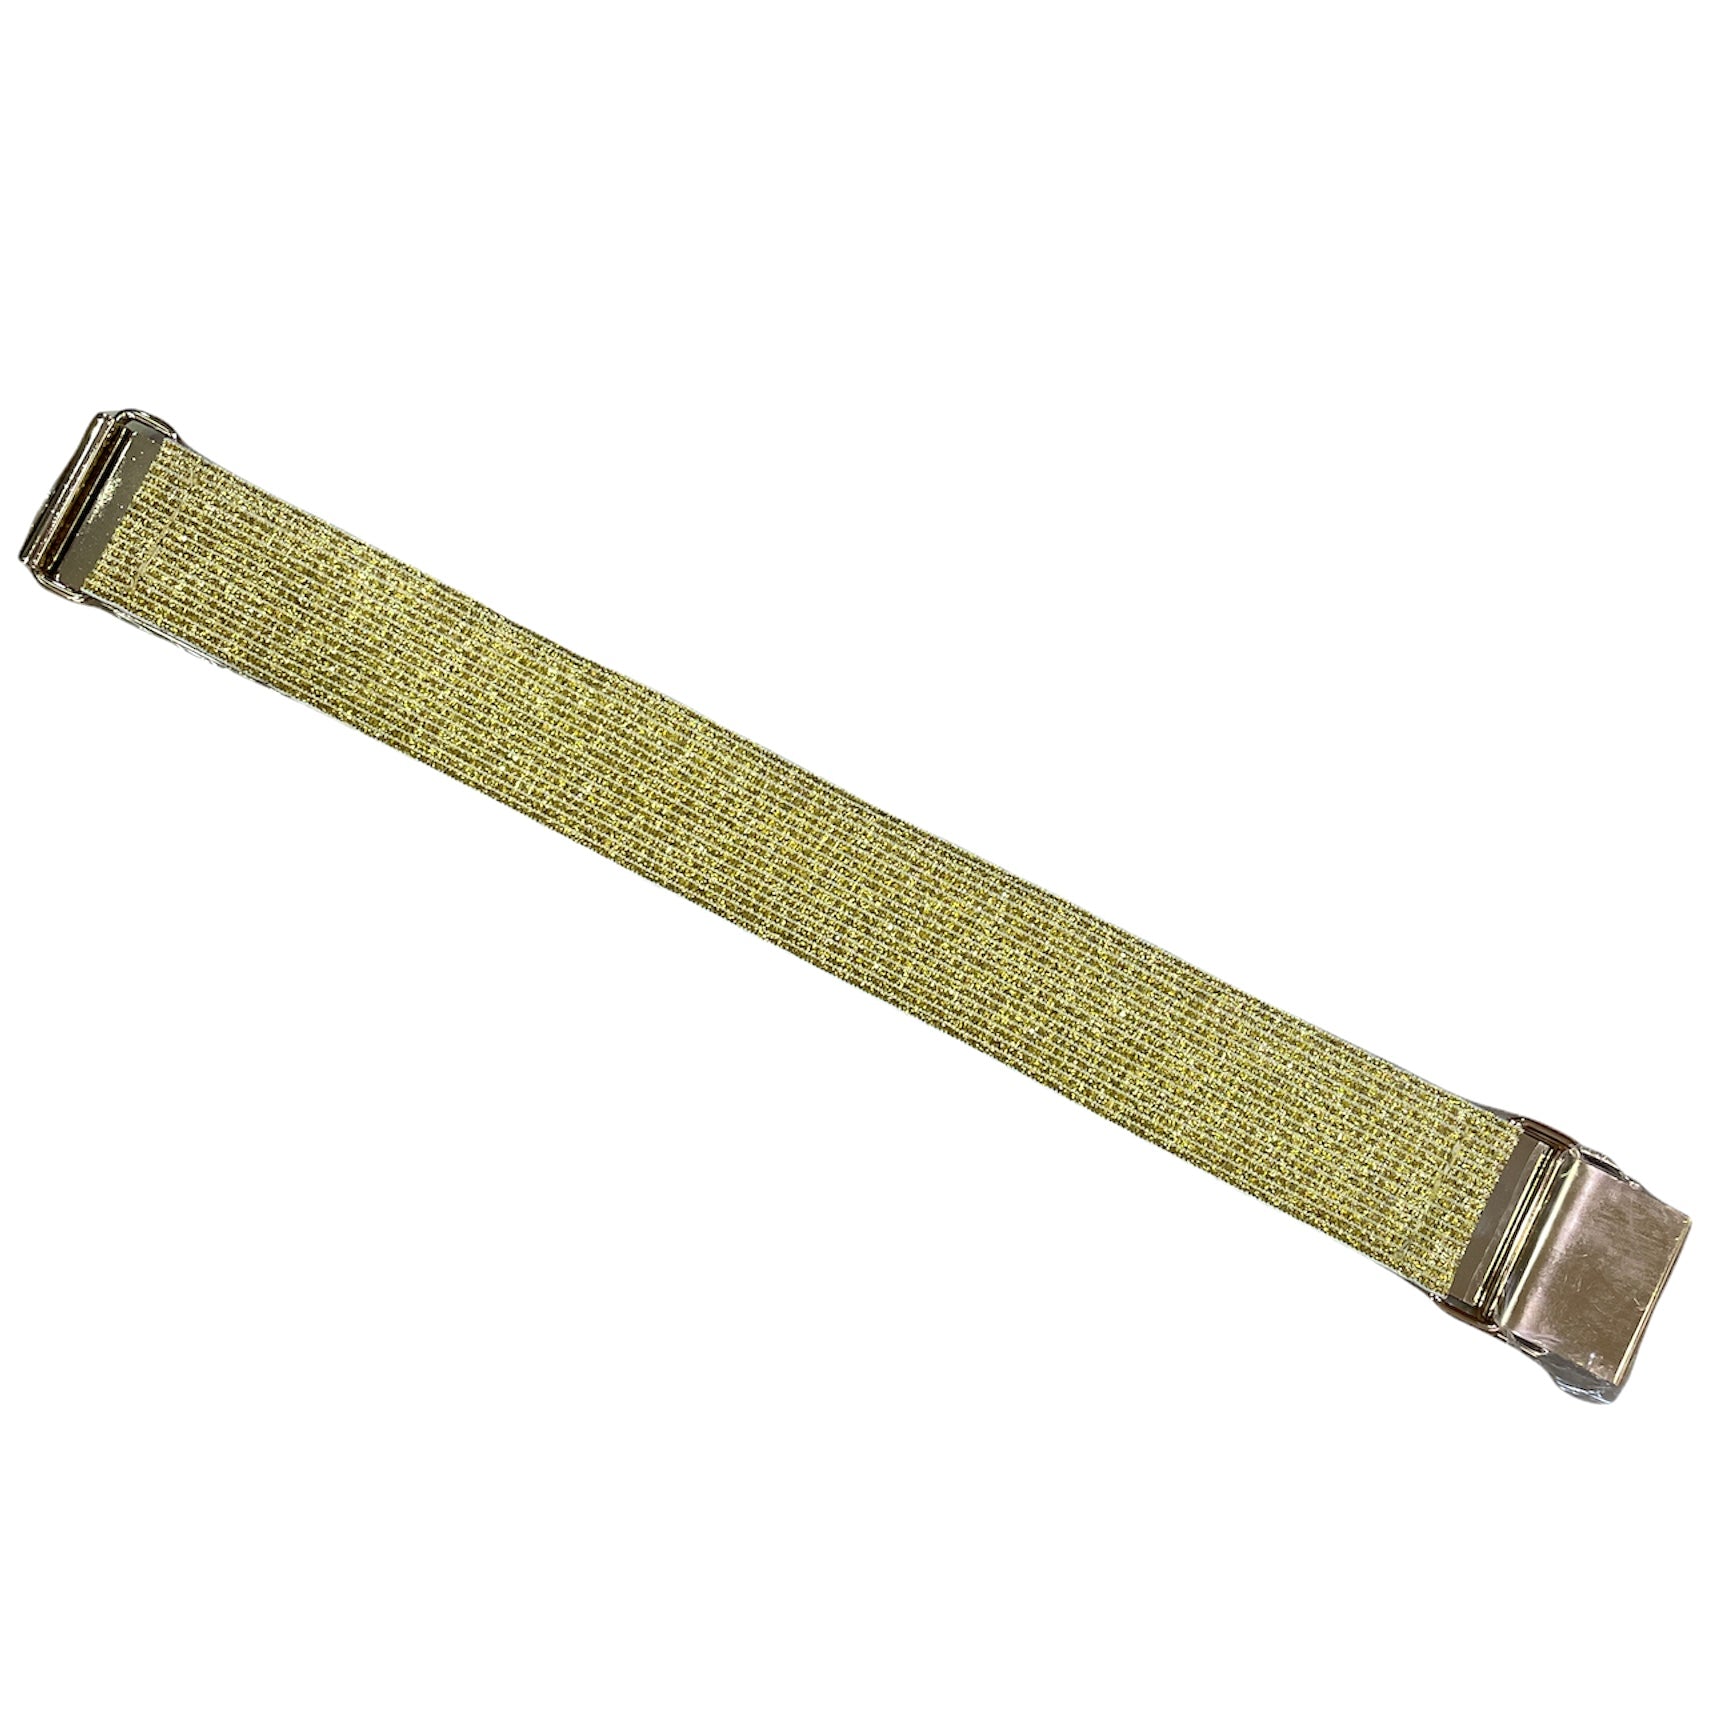 Plain Gold Metal Waist Cinch Elastic Belt